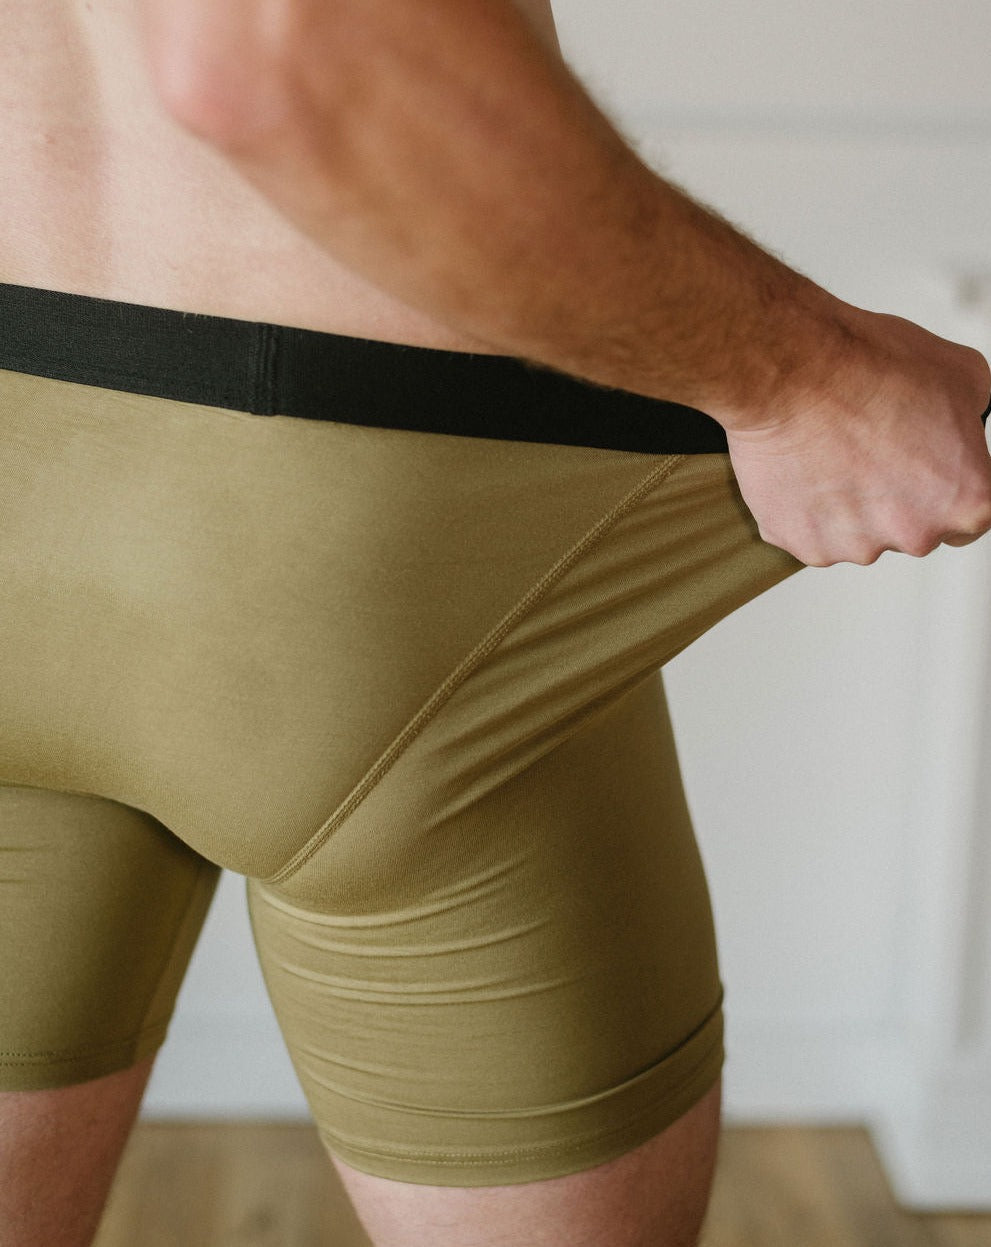 Men's Bamboo Underwear, Made in Quebec